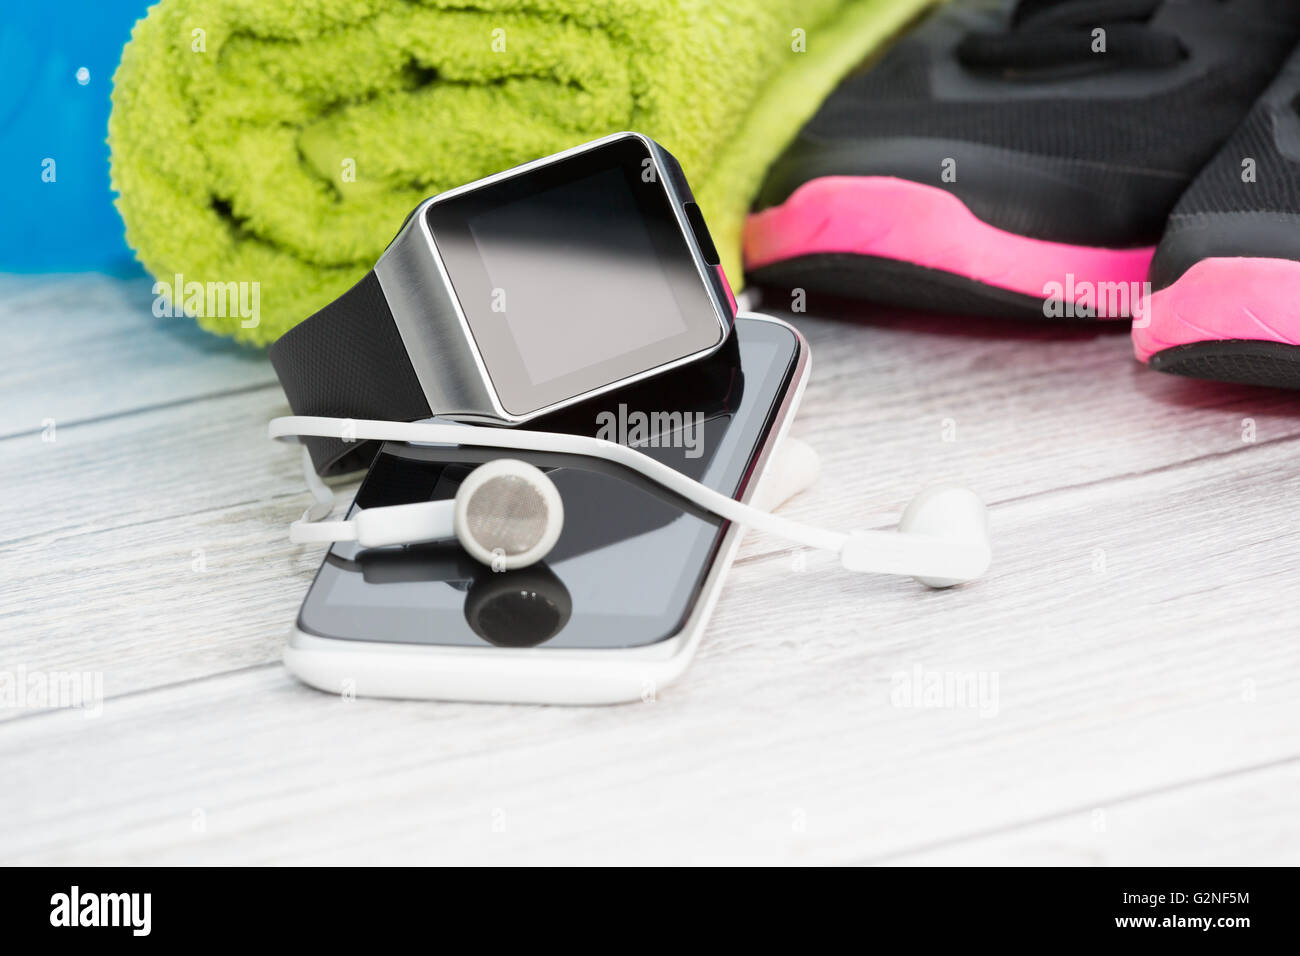 L'équipement de conditionnement physique, smart watch et téléphone sur fond de bois. Banque D'Images